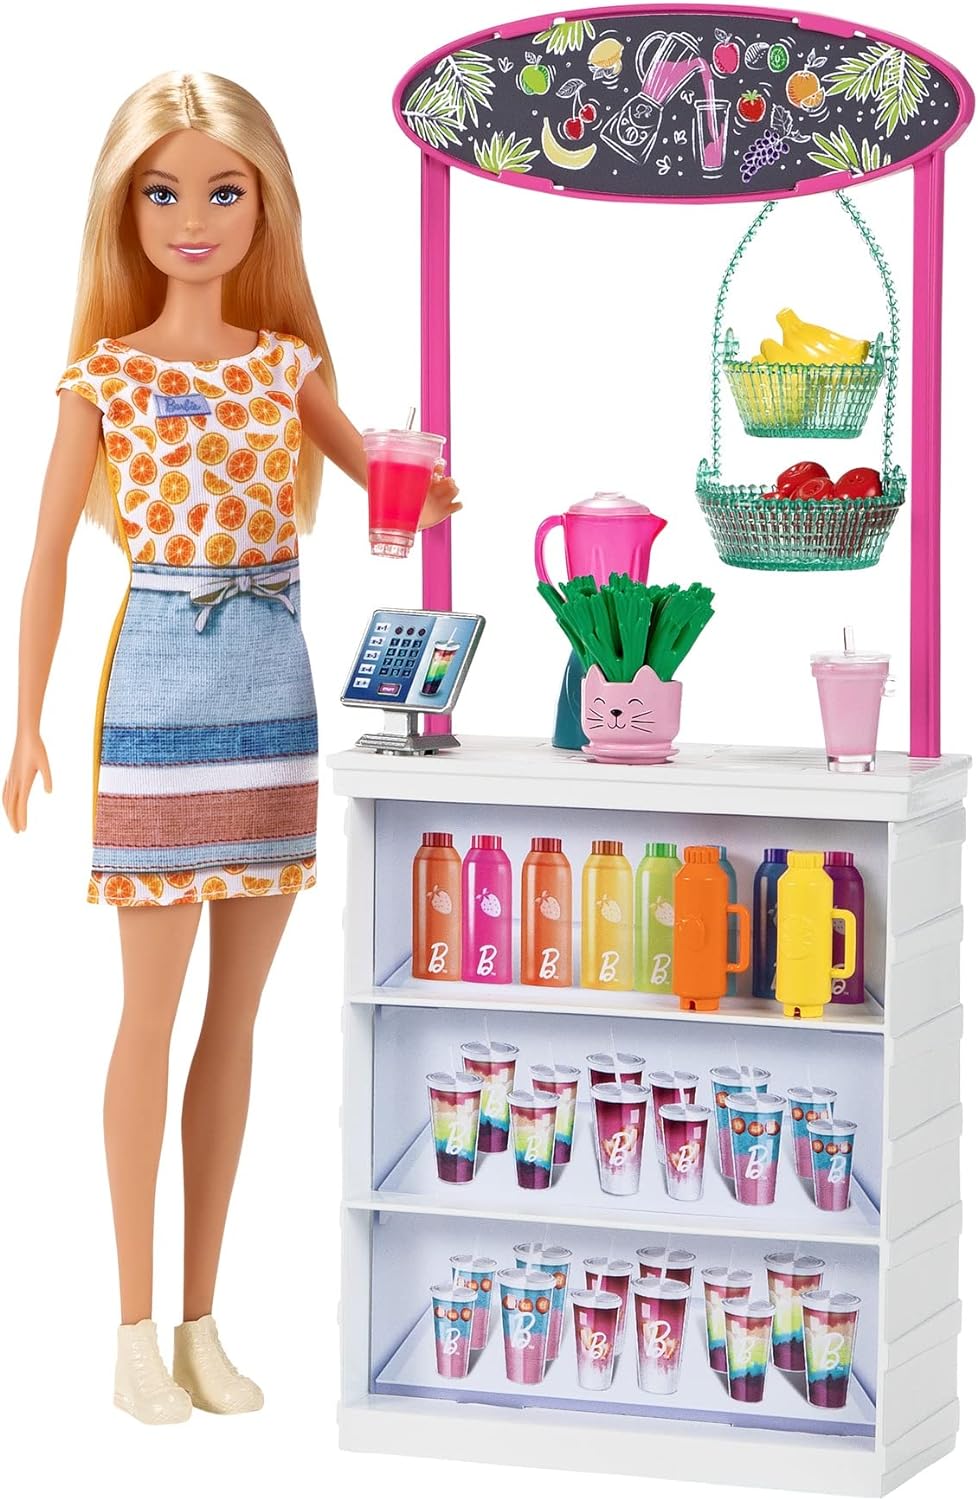 Mattel - Barbie - Playset Chioschetto dei Frullati con Bambola Bionda, Bar  e Tanti Accessori, Giocattolo per Bambini 3+Anni - GR